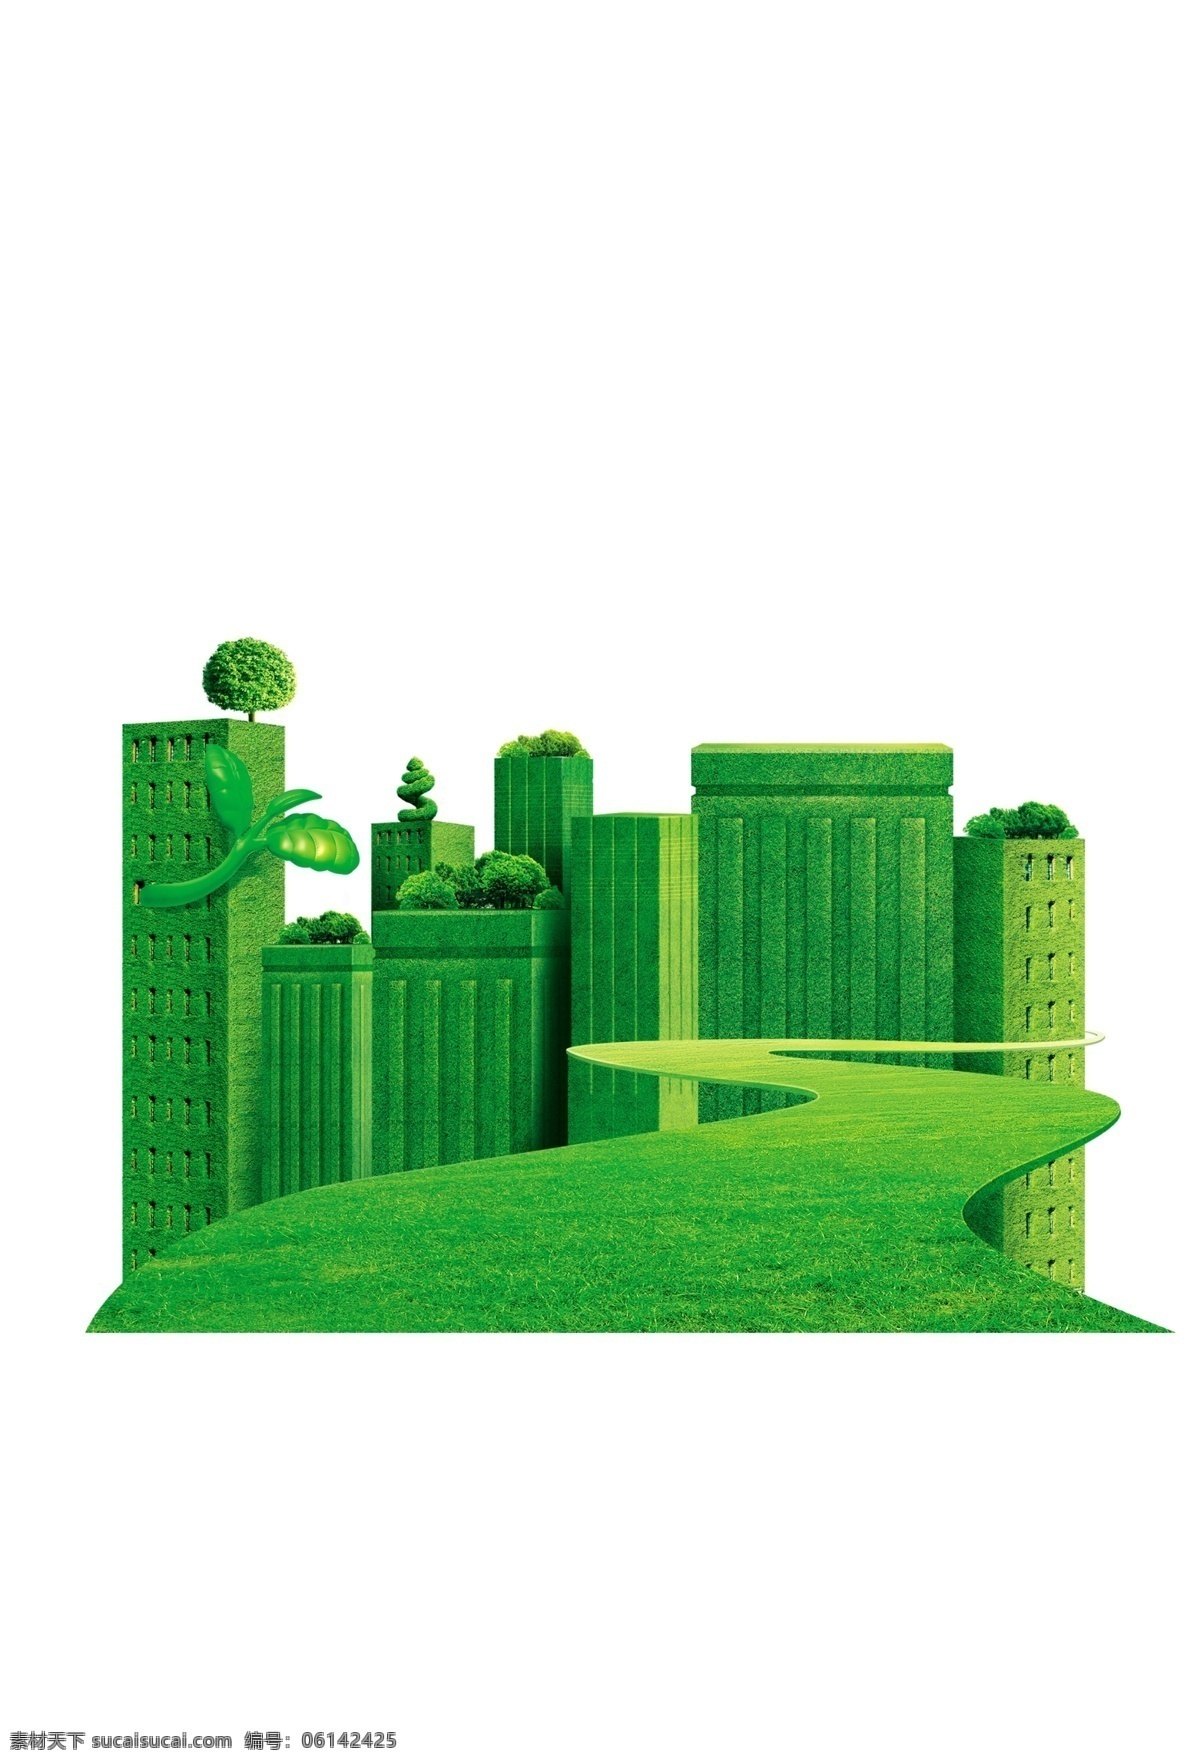 绿色环保 楼群 绿色 环保 地产 海报素材 矢量 分层